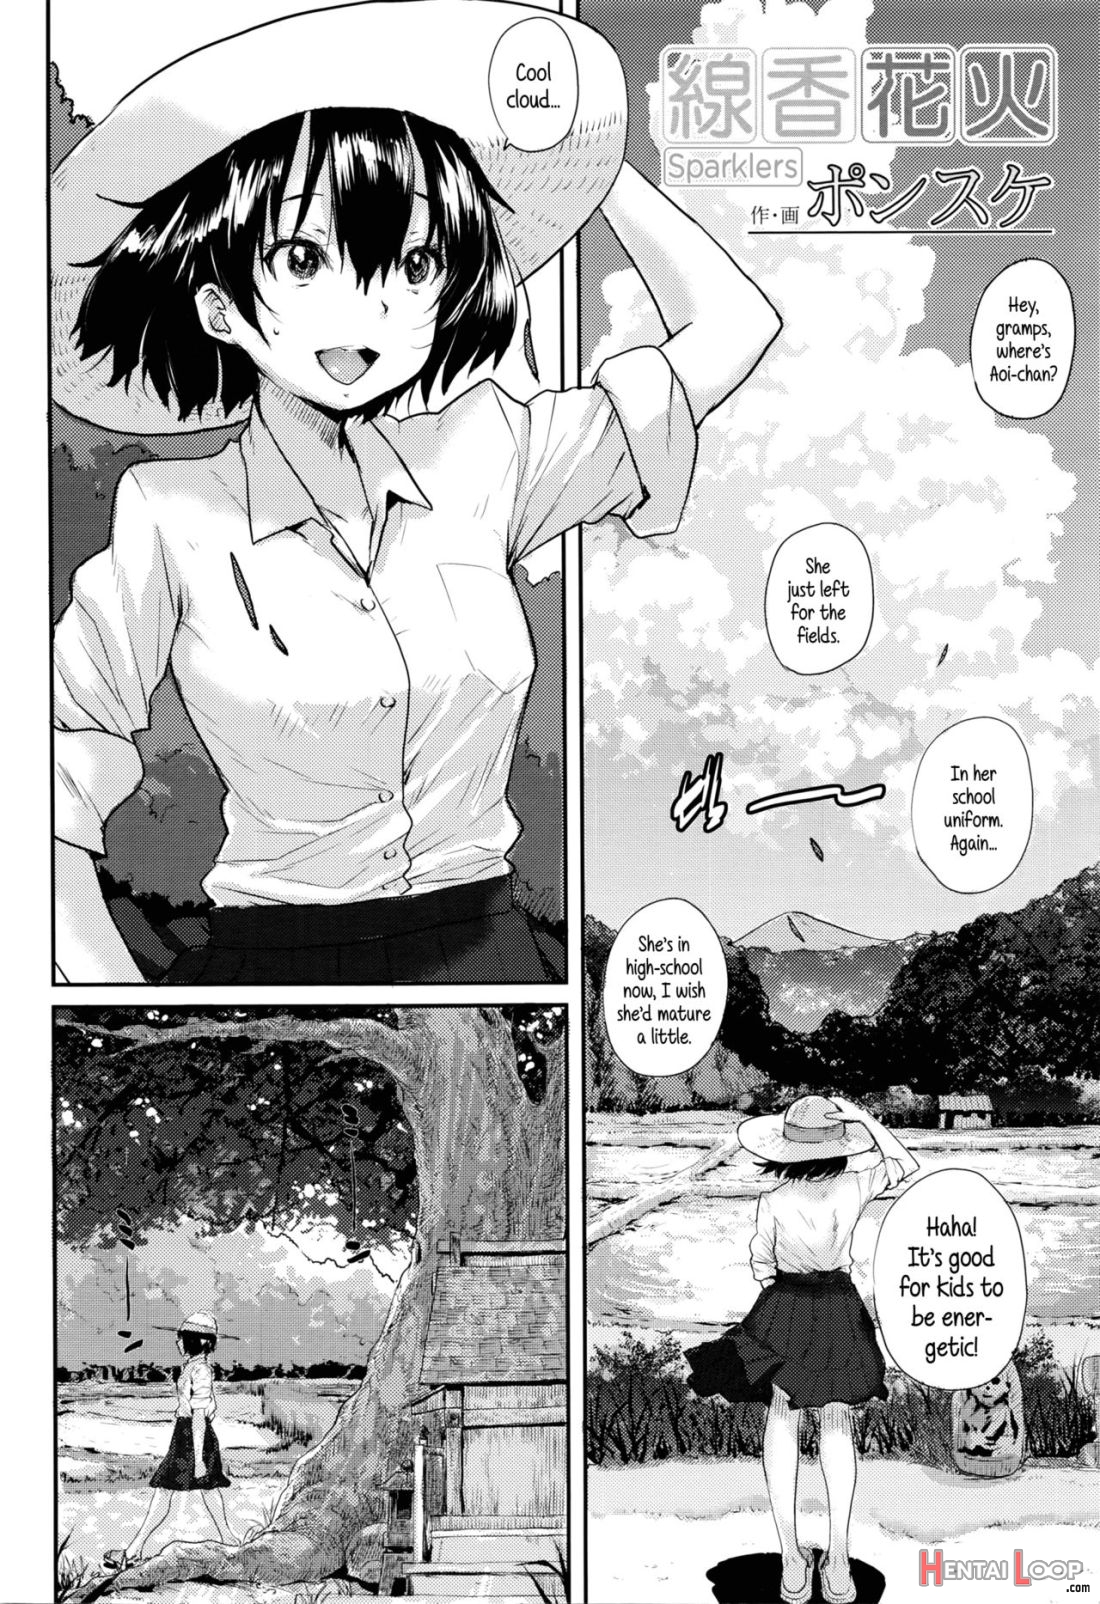 Senkou Hanabi page 2